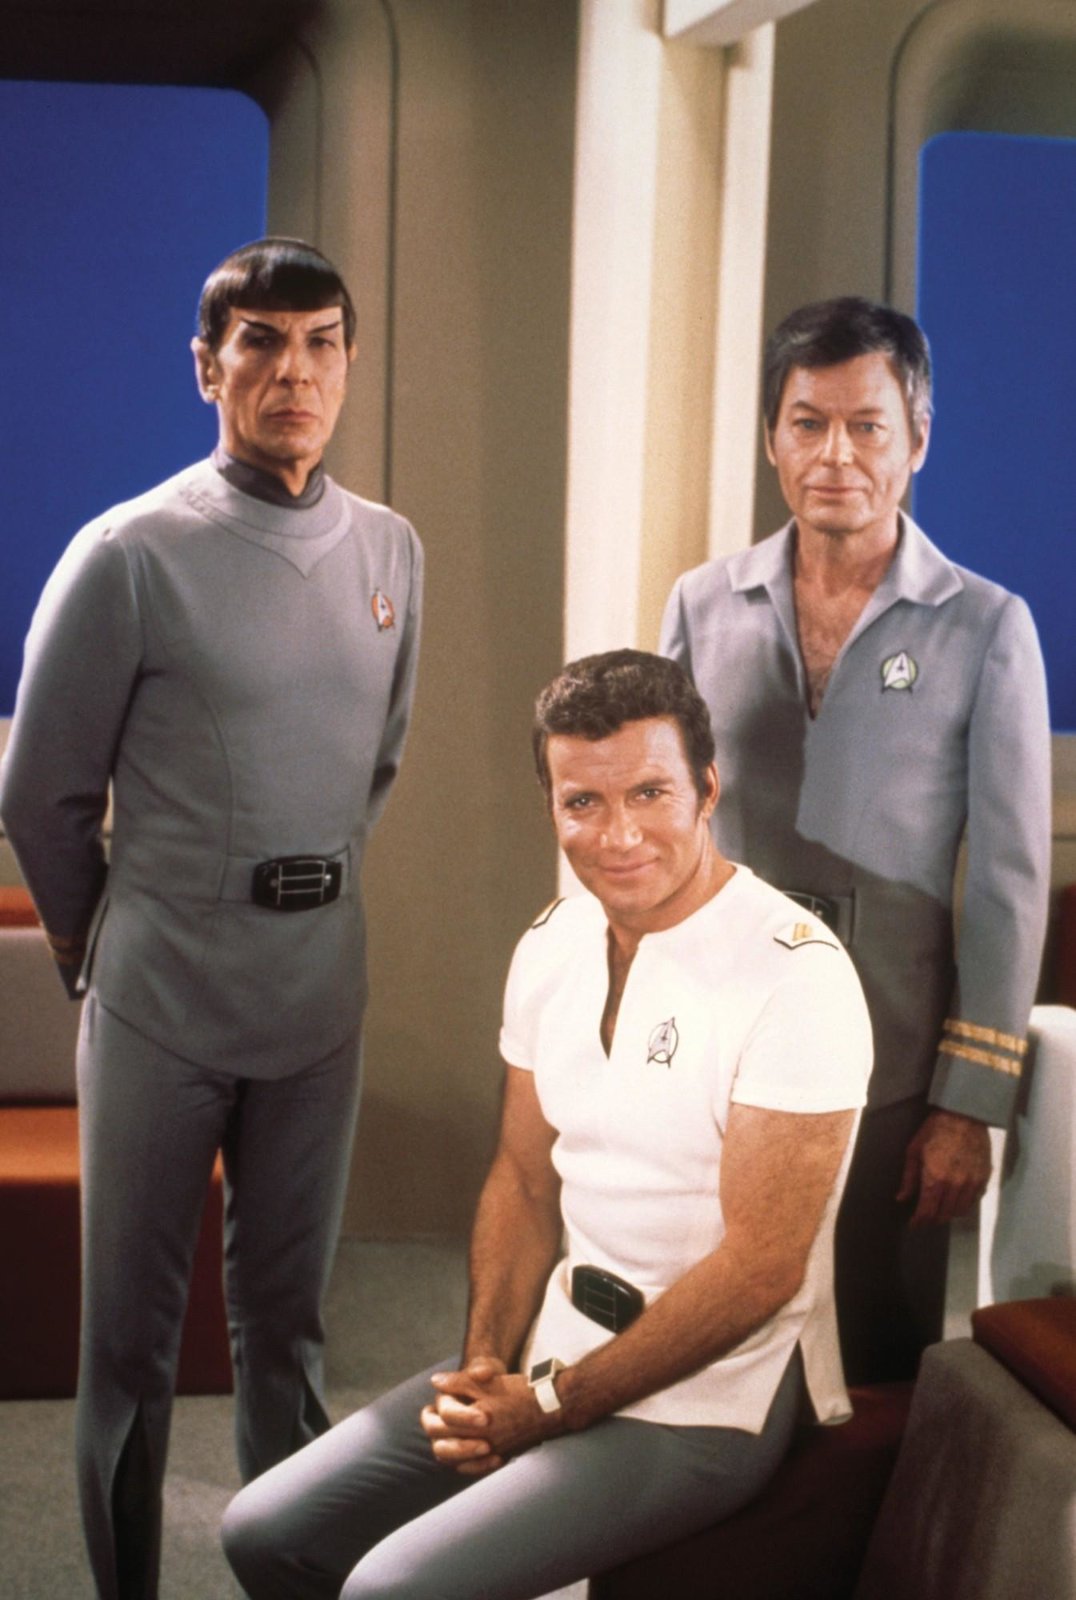 Star Trek 1 - Der Film - Directors Cut (blu-ray)